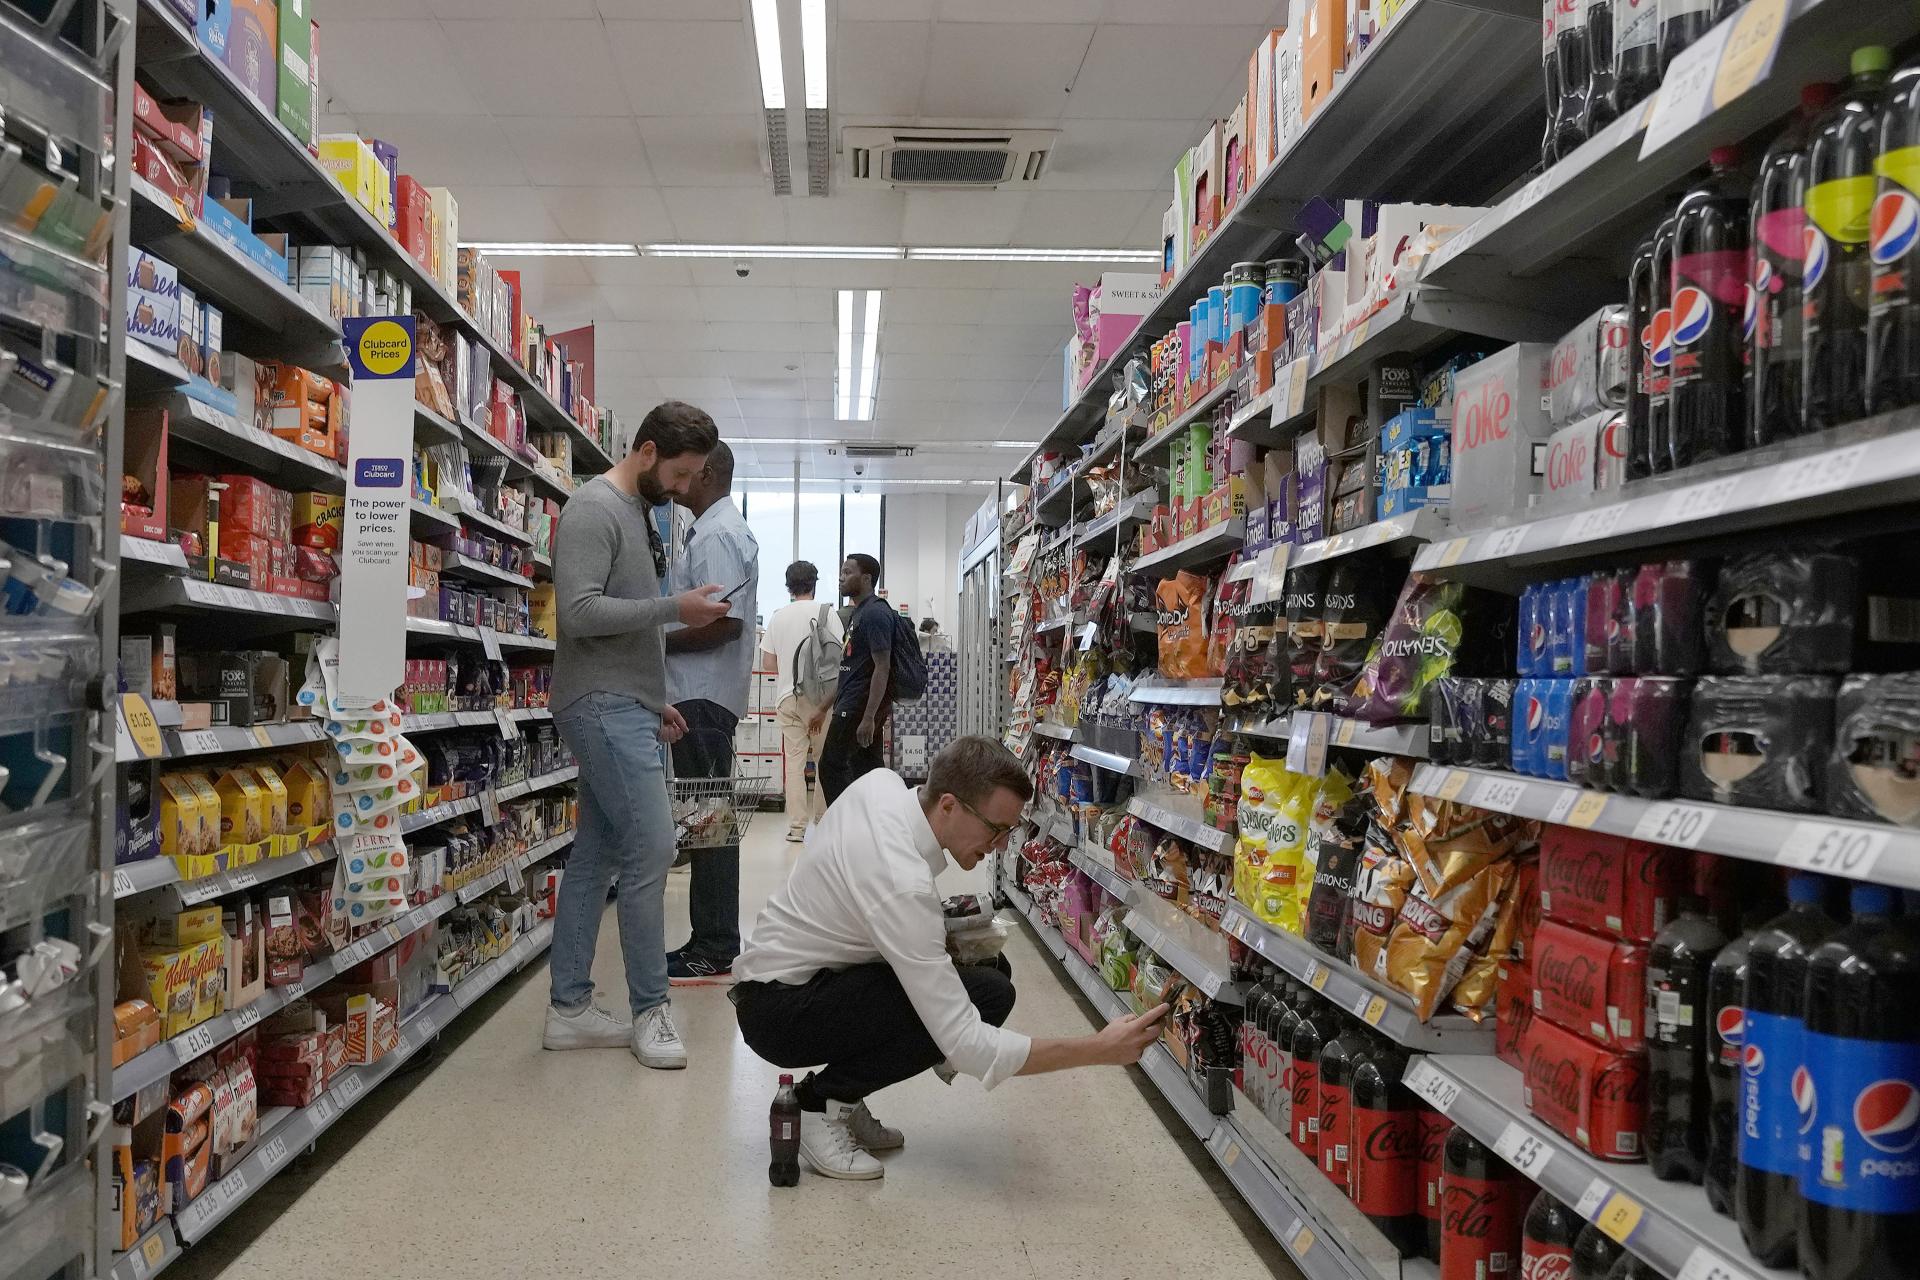 Ľudia sa po inflačnej kríze pustili do nákupov. Výrazné nárasty hlásia e-shopy aj hypermarkety